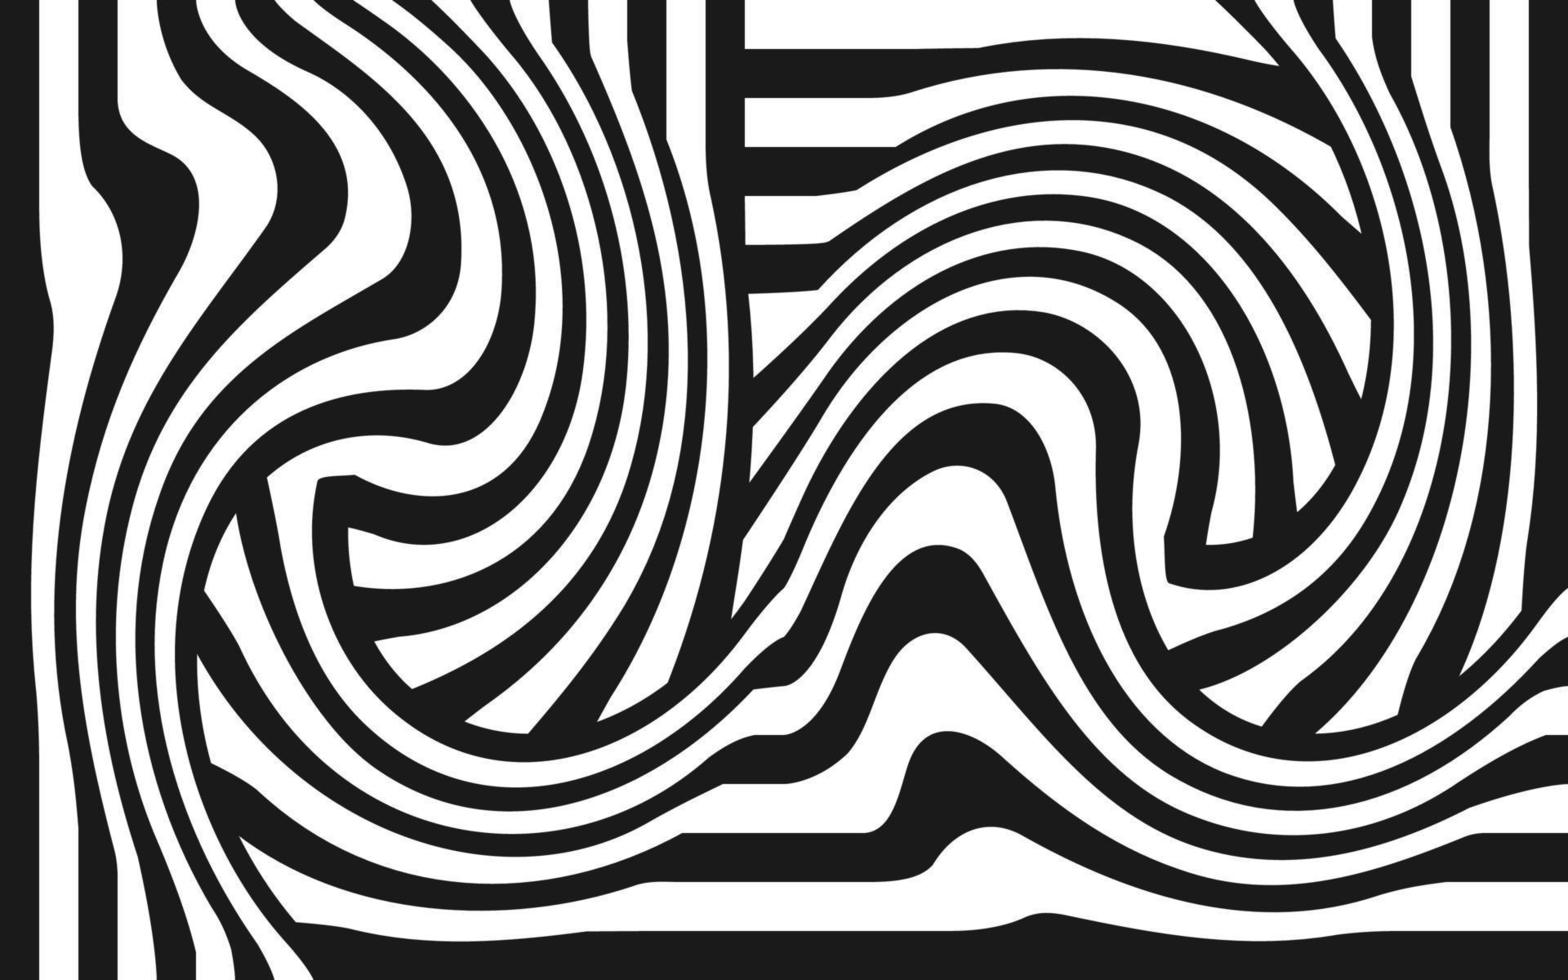 vetor abstrato preto e branco do fundo das listras da zebra. papel de parede e pano de fundo de linhas onduladas psicodélicas.